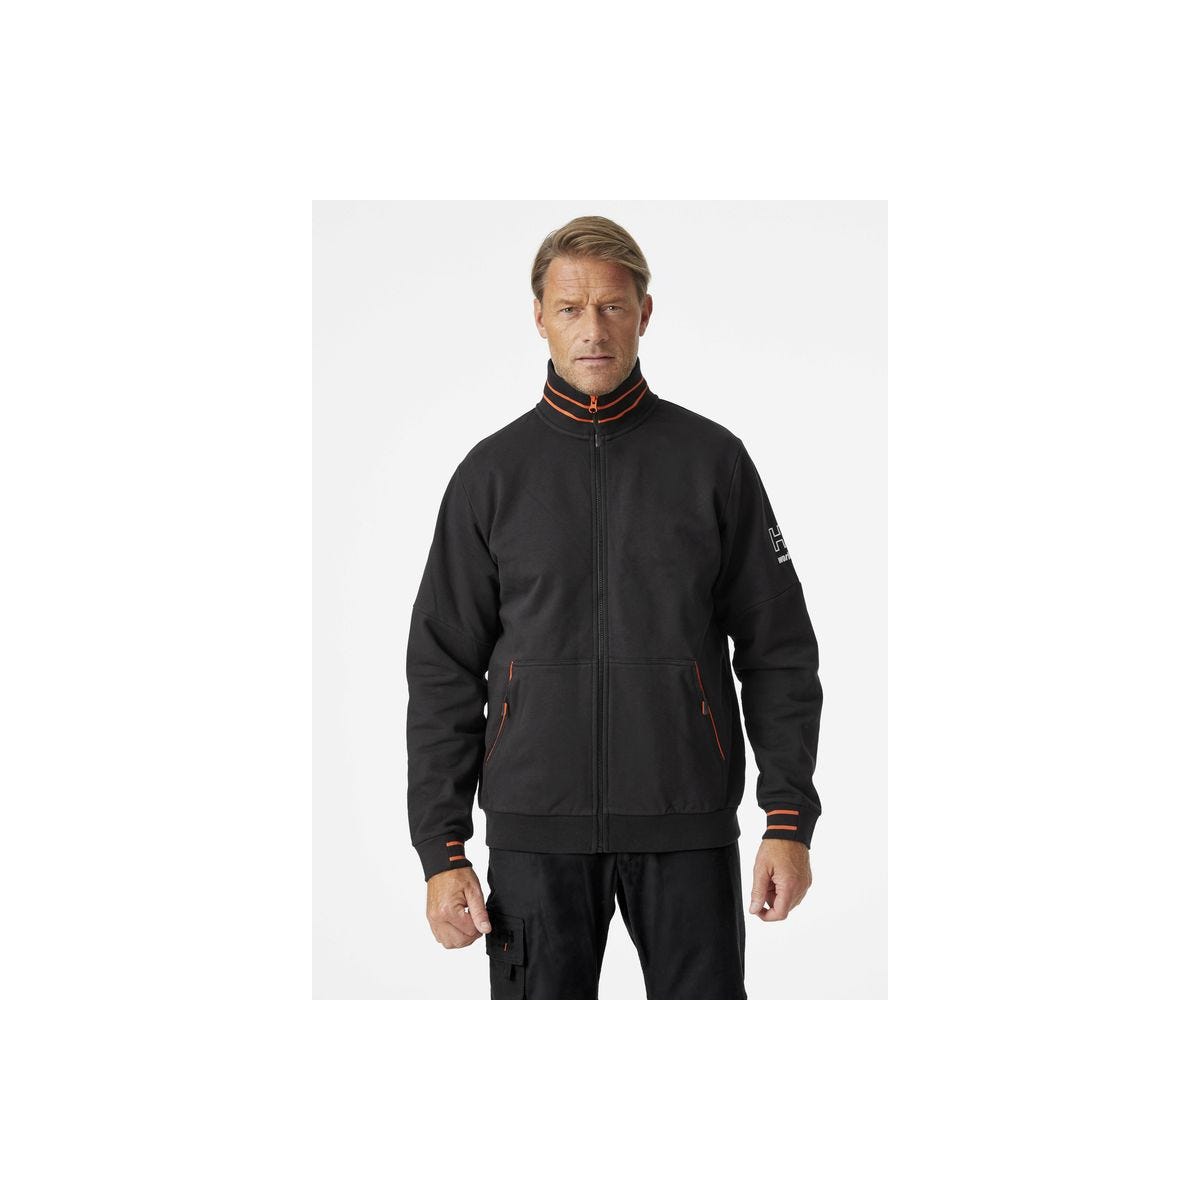 Sweat-shirt zippé noir kensington - HELLY HANSEN - Taille XL 0